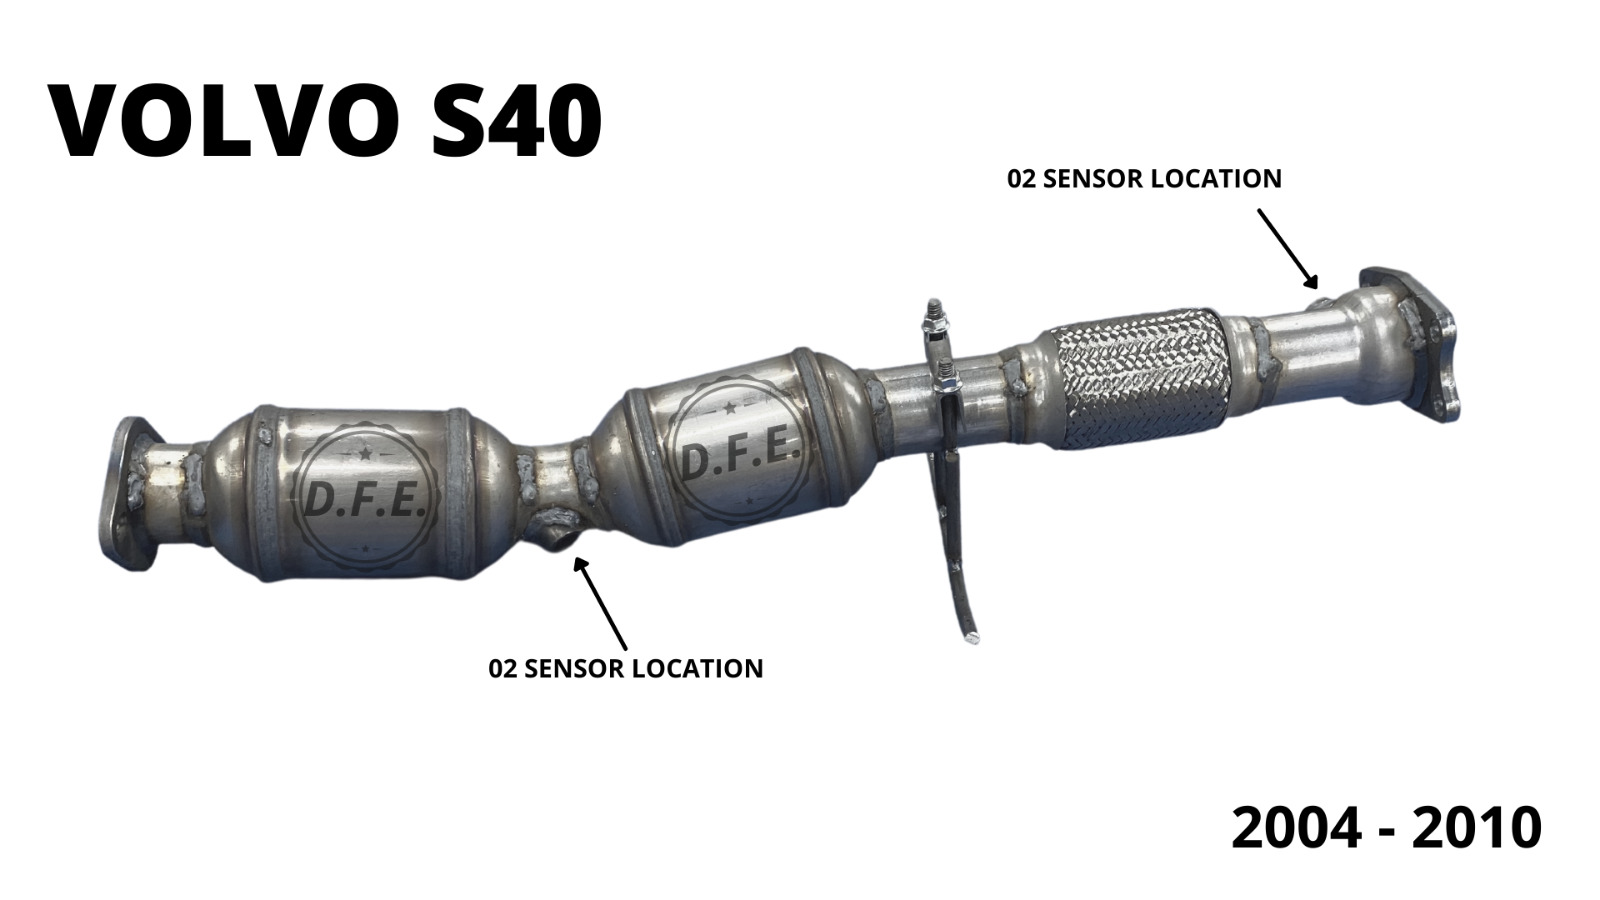 Catalytic Converter for 04-10 Volvo S40/05-10 V50 2.4L ULEV 2 Emissions